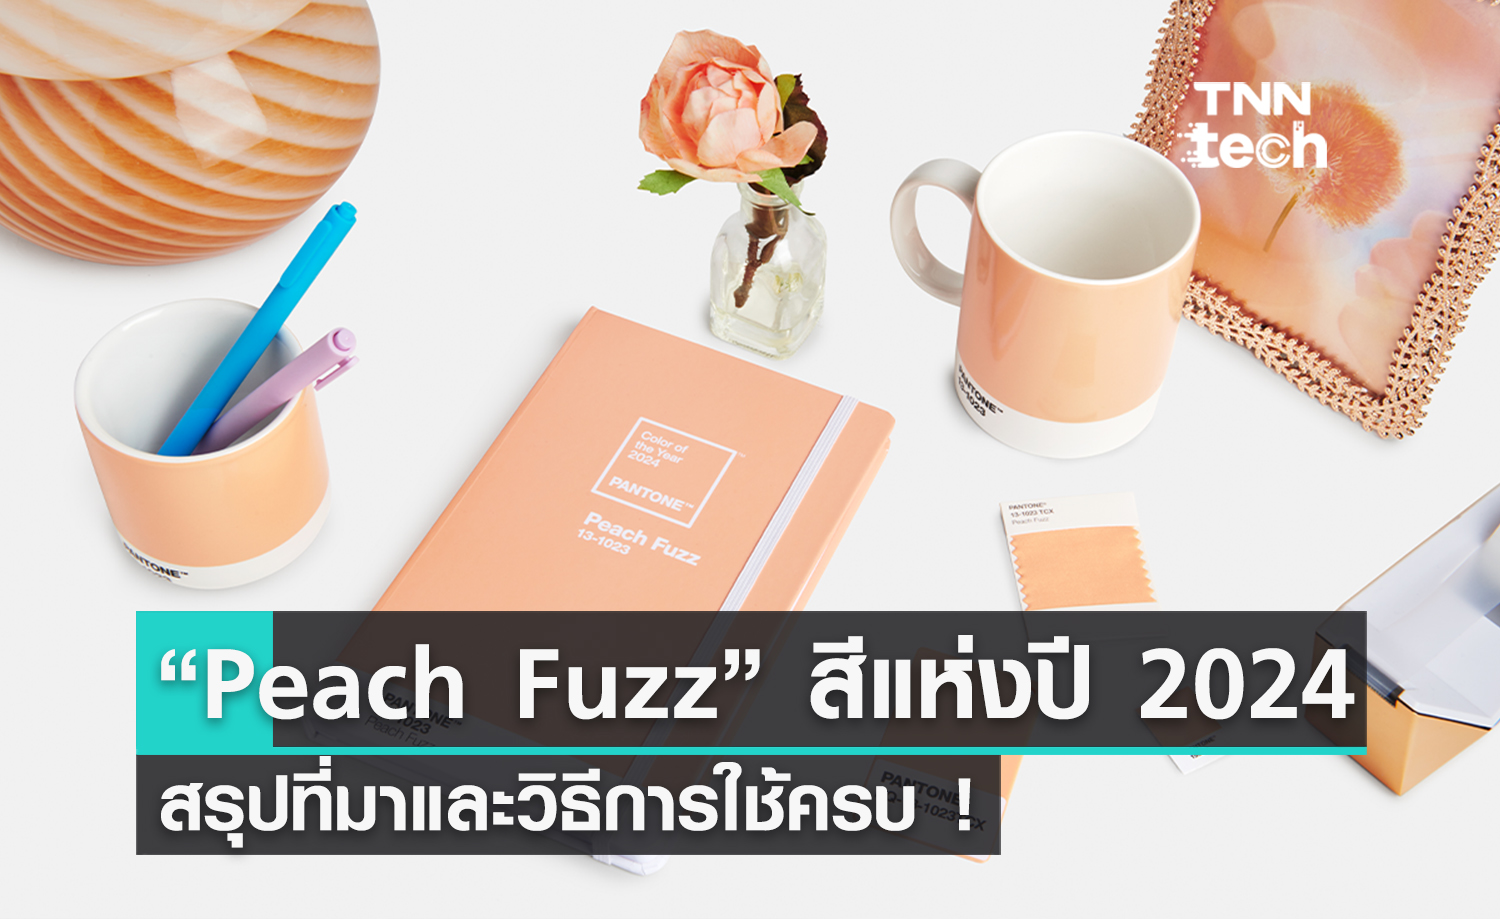 มาแล้ว ! “Peach Fuzz”​ เป็น Color of The Year 2024 ว่าที่สีใหม่ยอดฮิตในปีหน้า มาพร้อมวิธีใช้งานกับทุกการออกแบบ